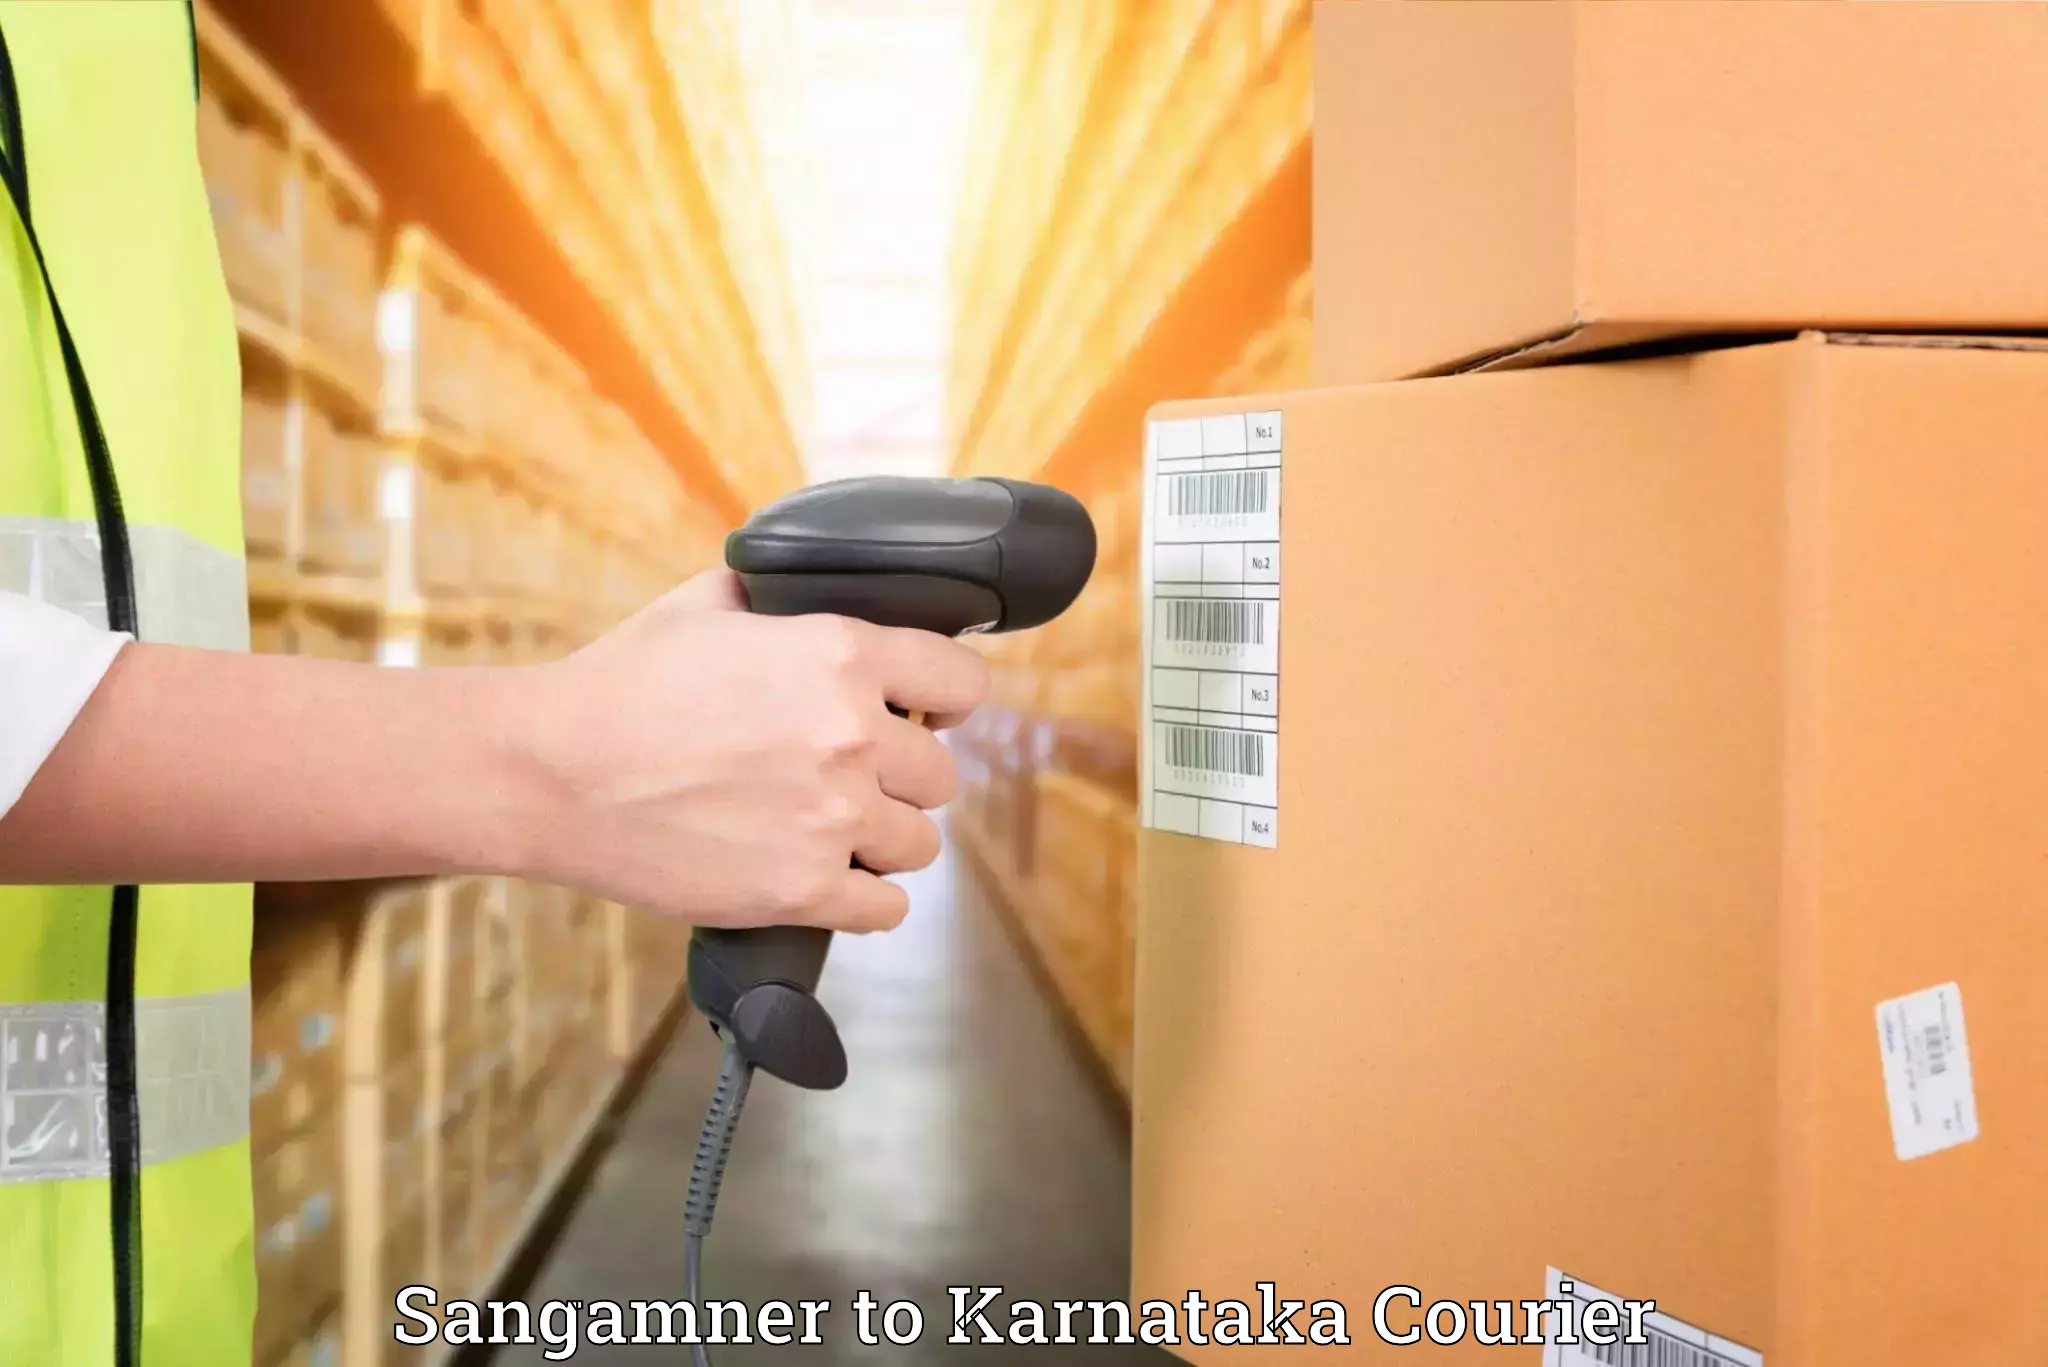 Furniture moving experts Sangamner to Karnataka